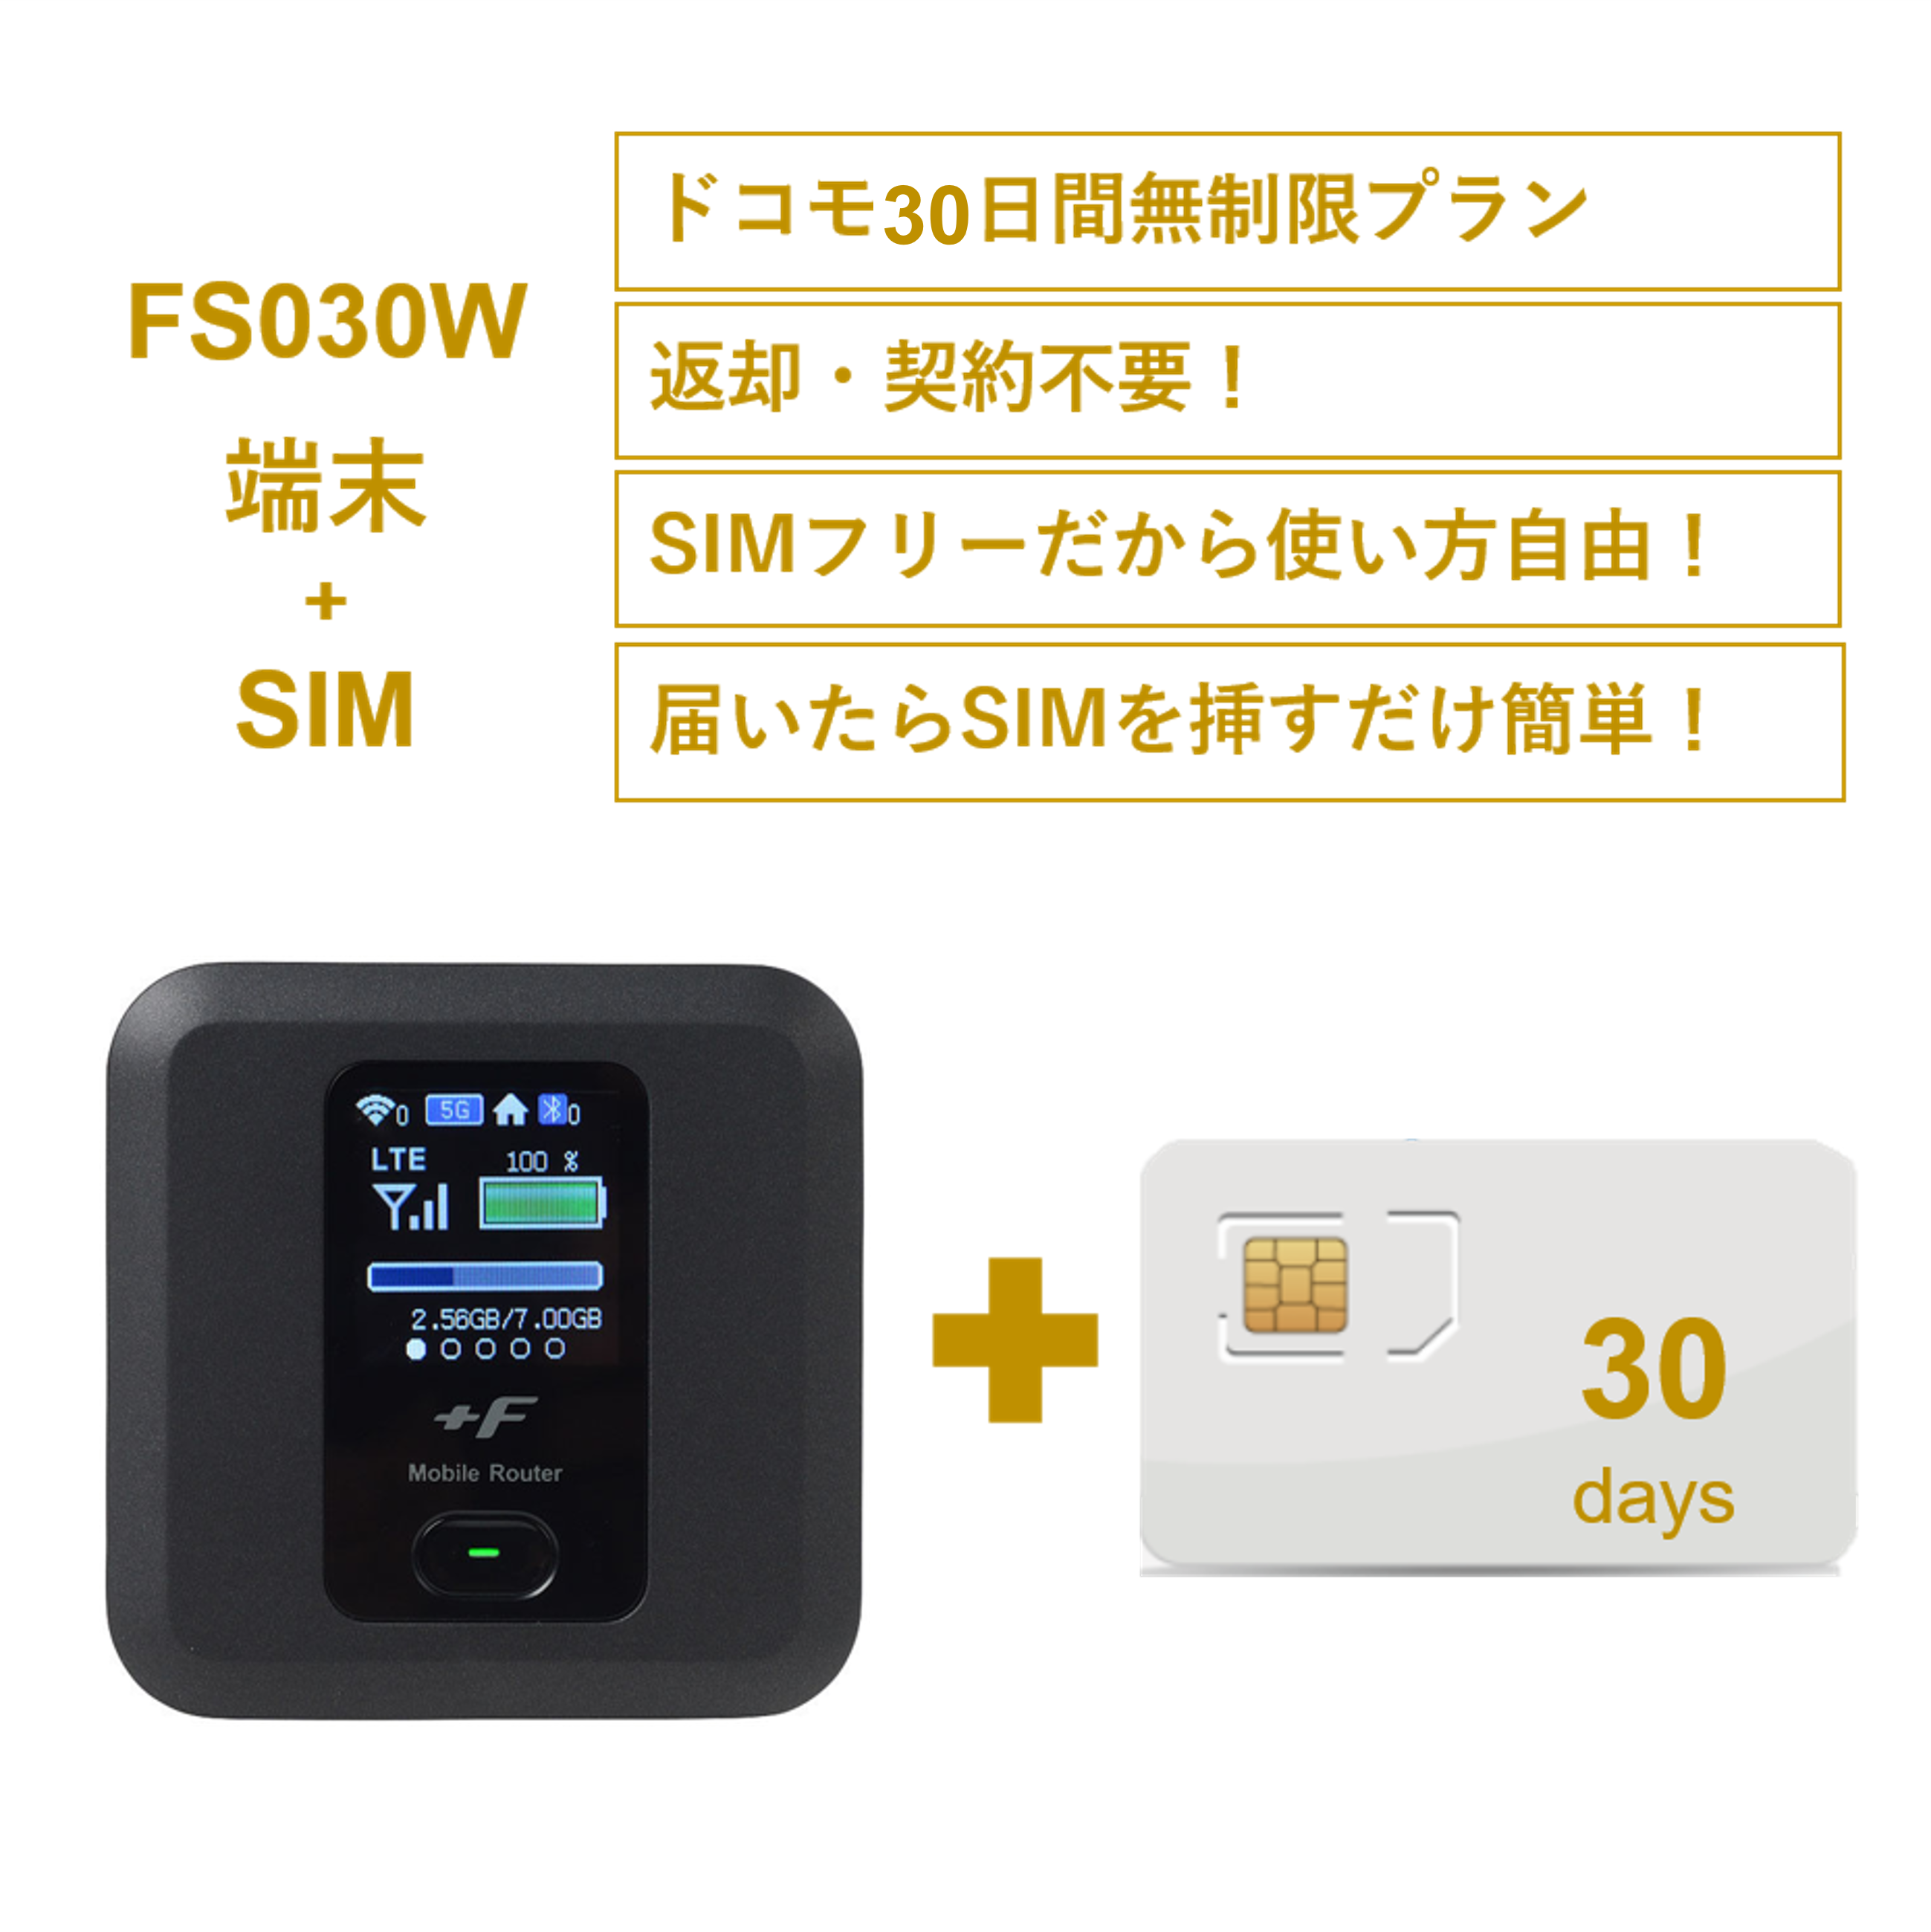 【美品】富士ソフト ルーター +F FS030W FS030WMB1